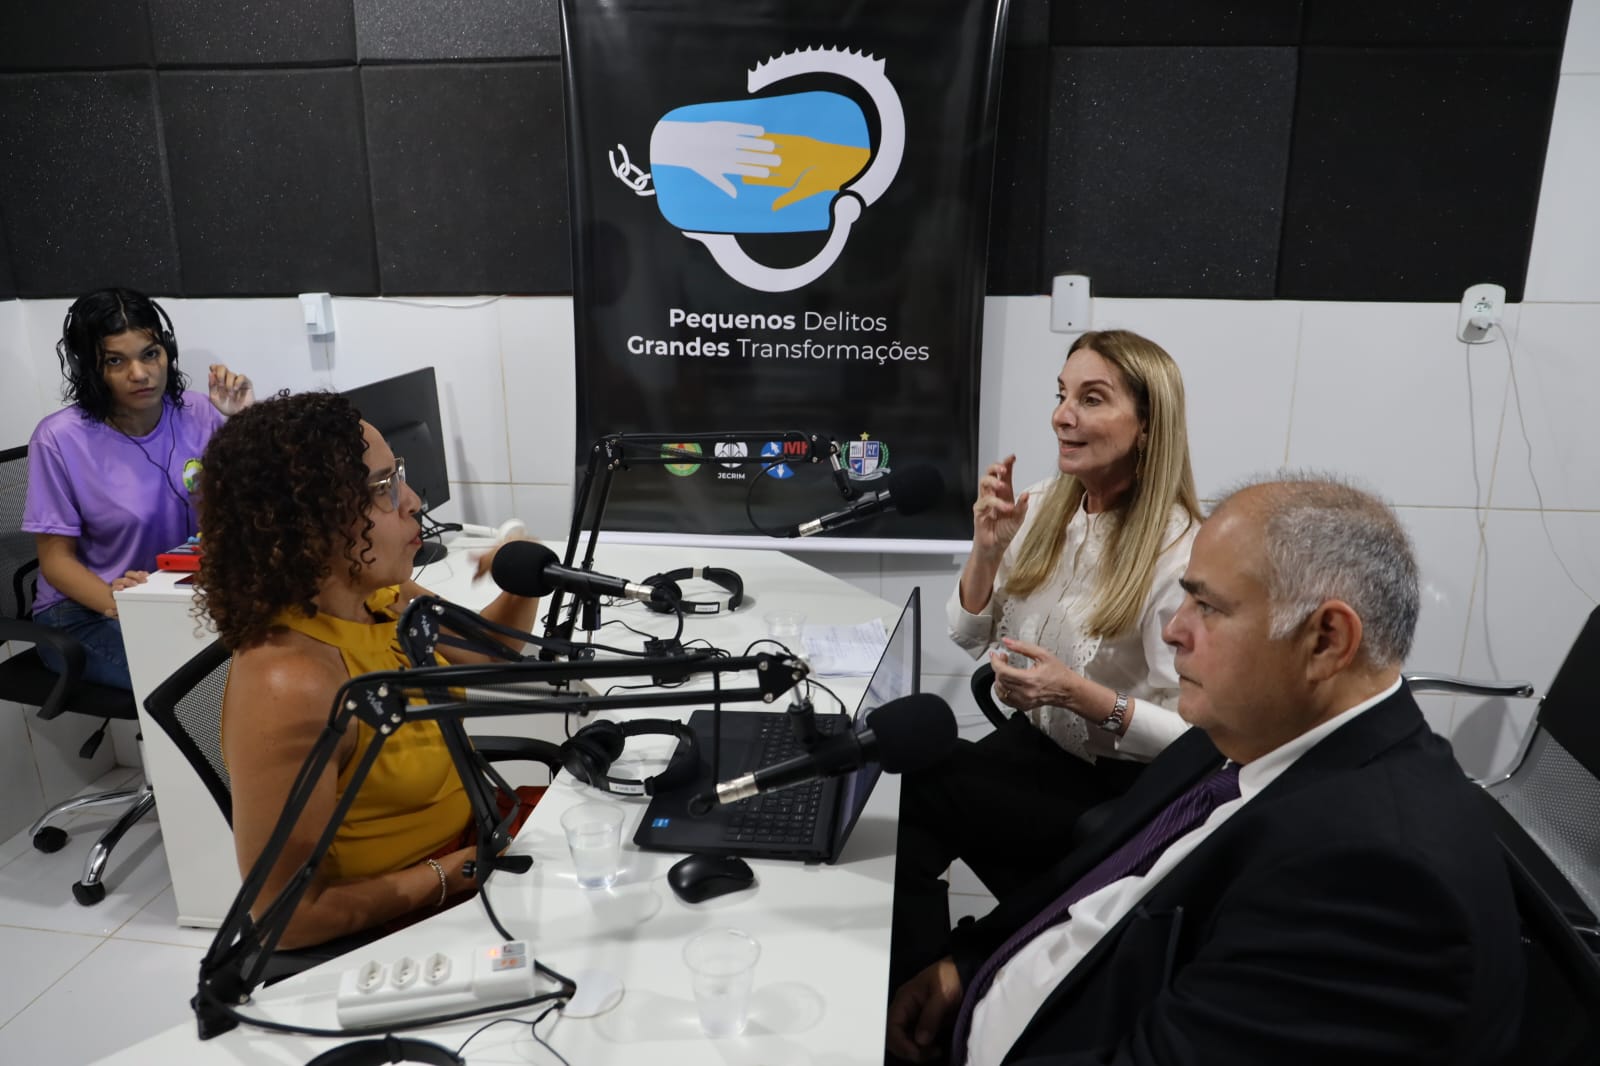 Ministério Público equipa rádio de Centro Espirita Nosso Lar por meio de transação penal